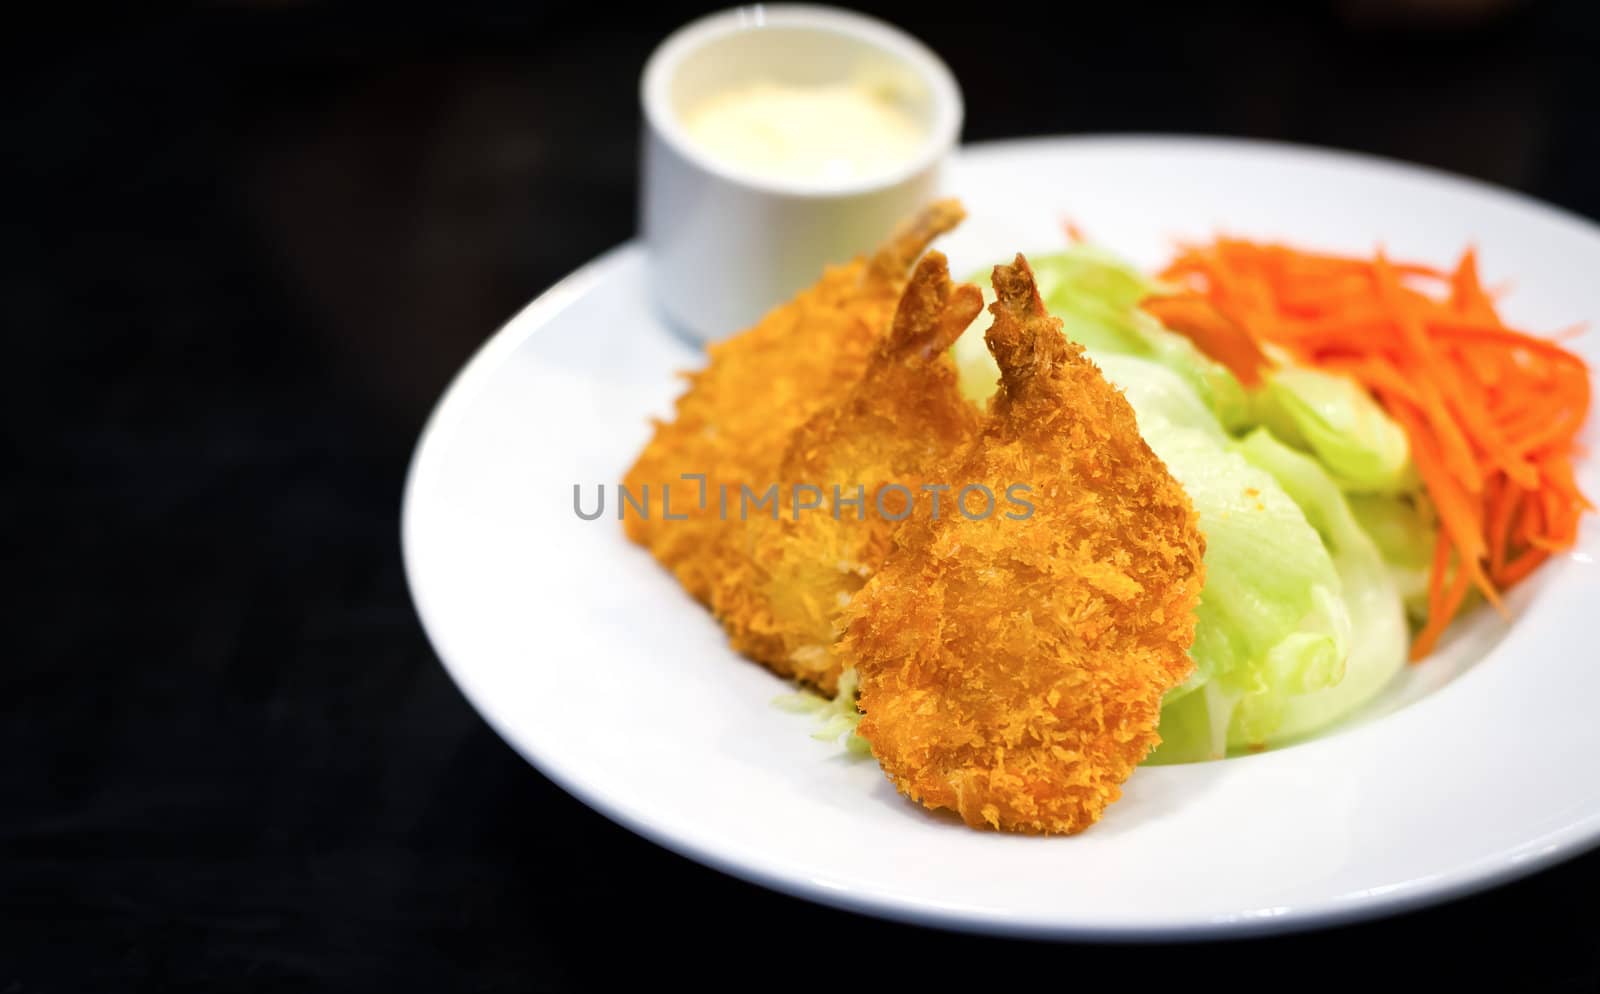 Fried shrimp salad food by moggara12